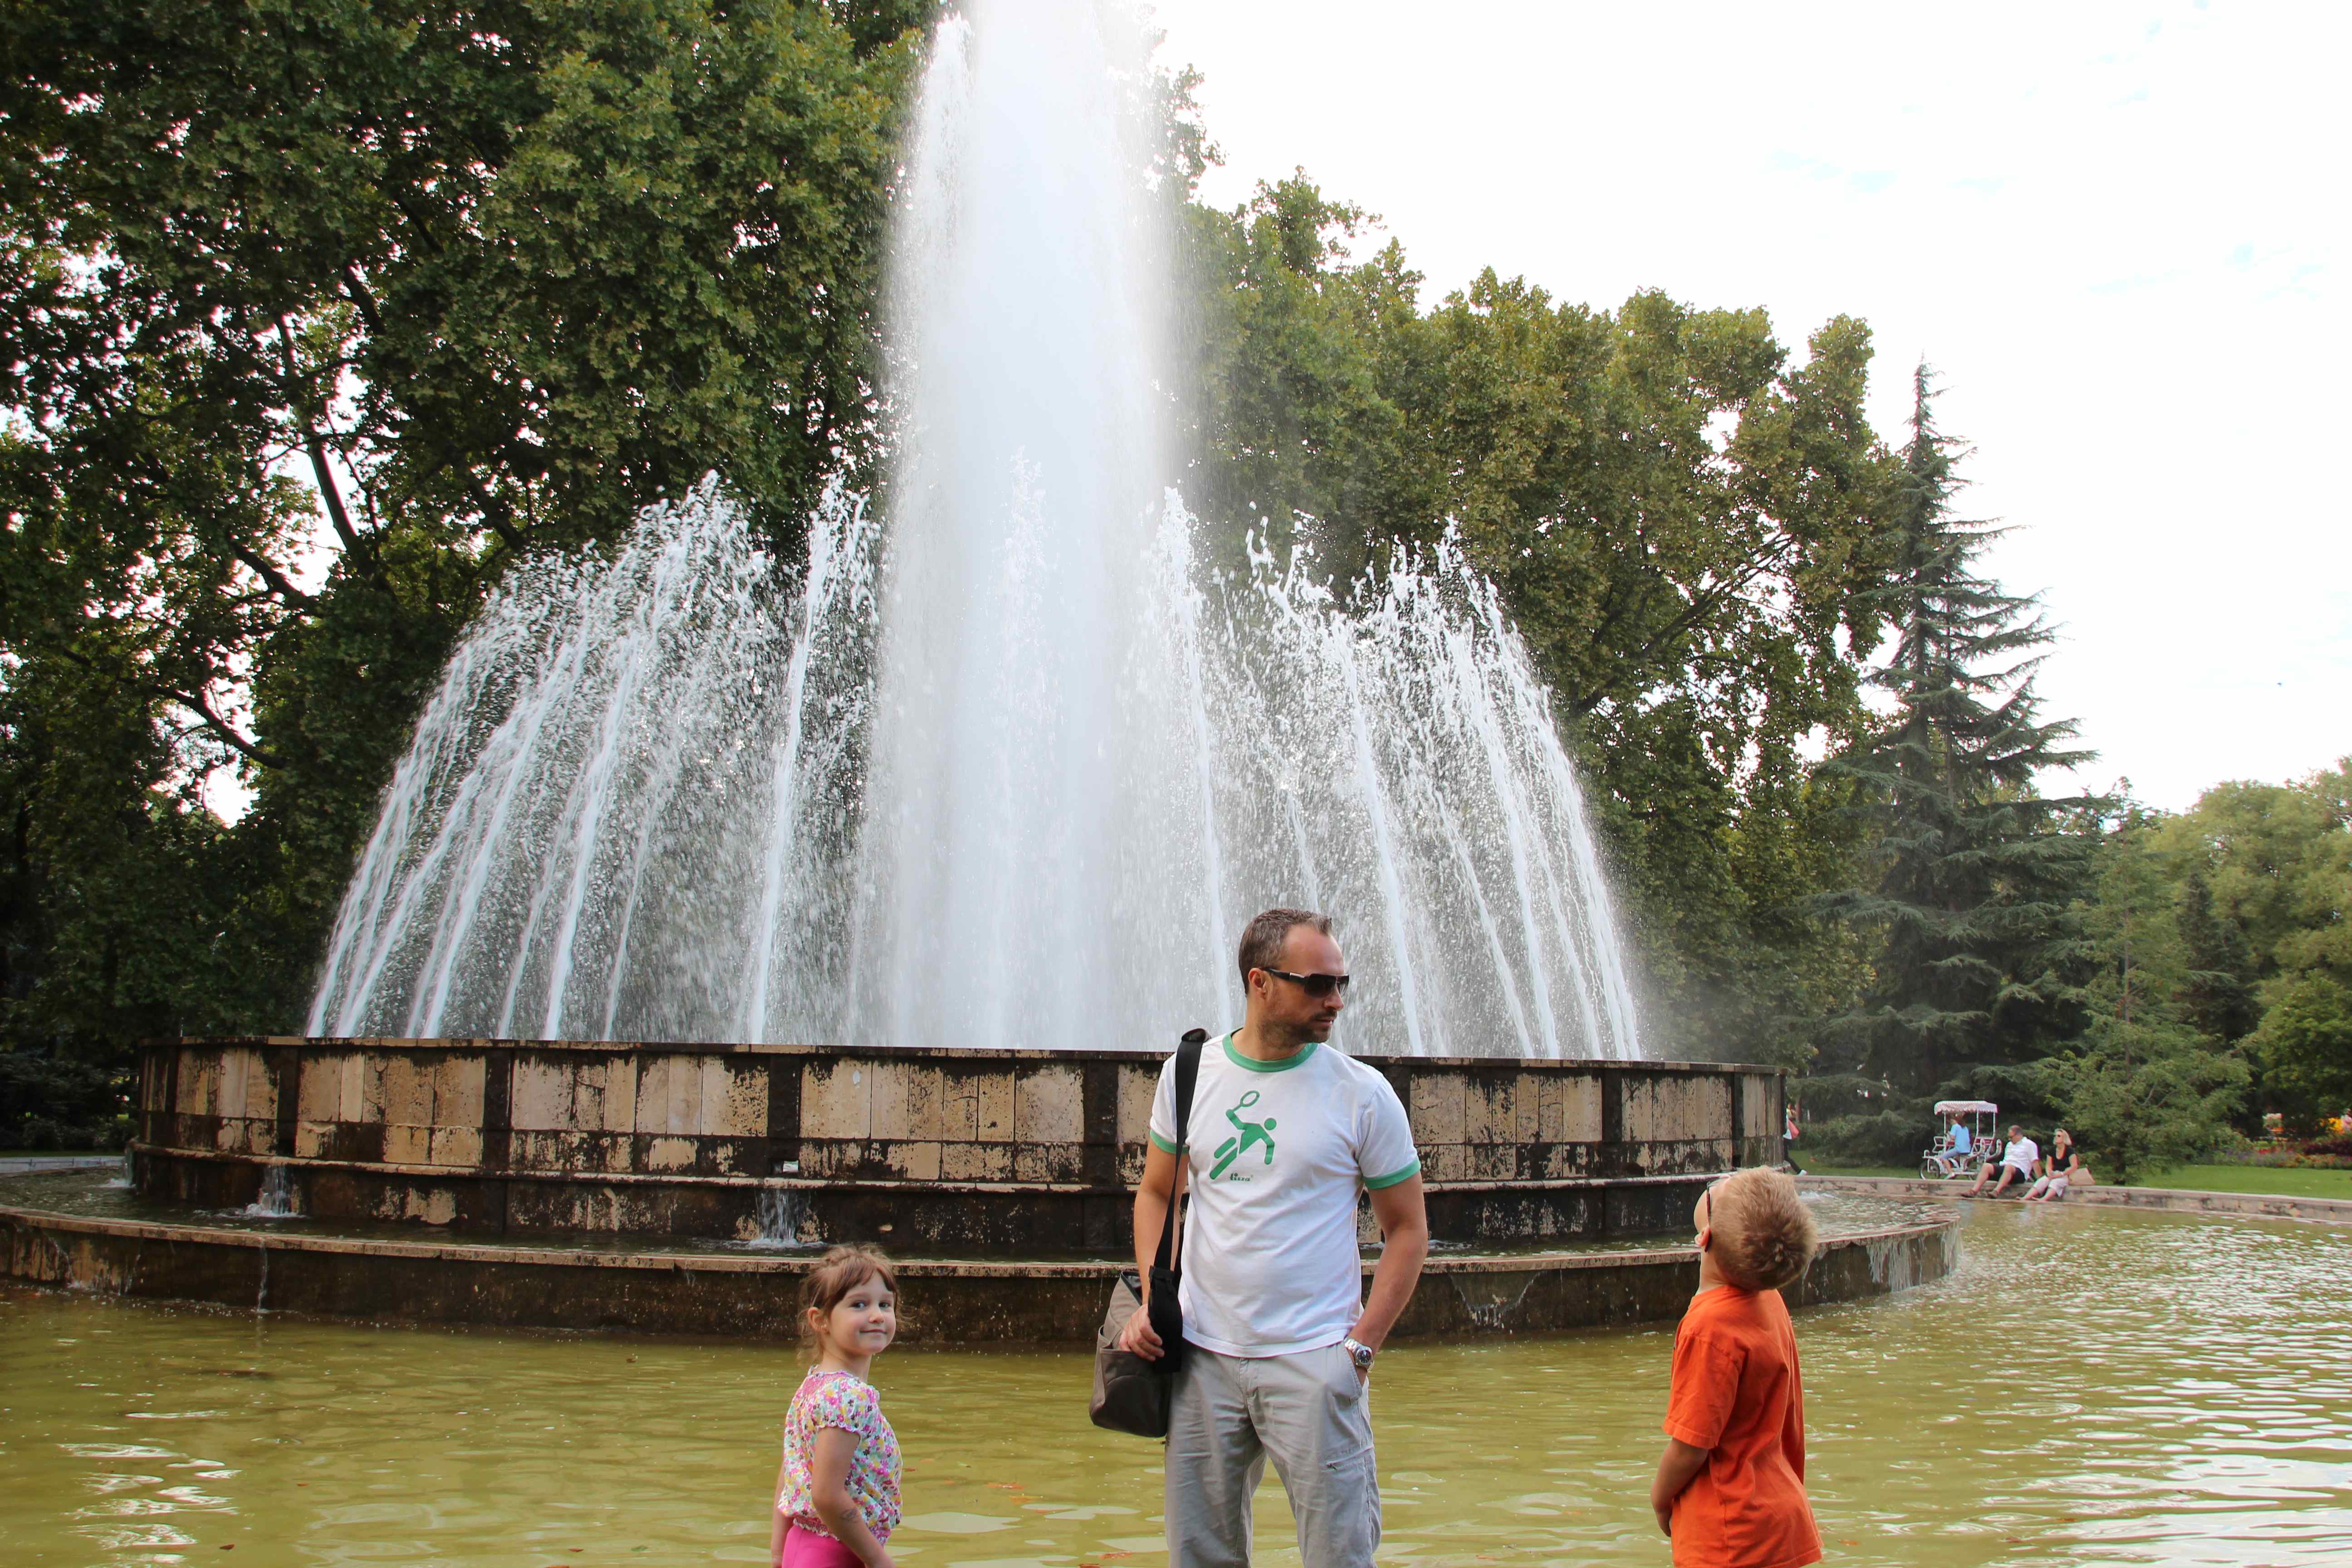 city park fountains Budapest